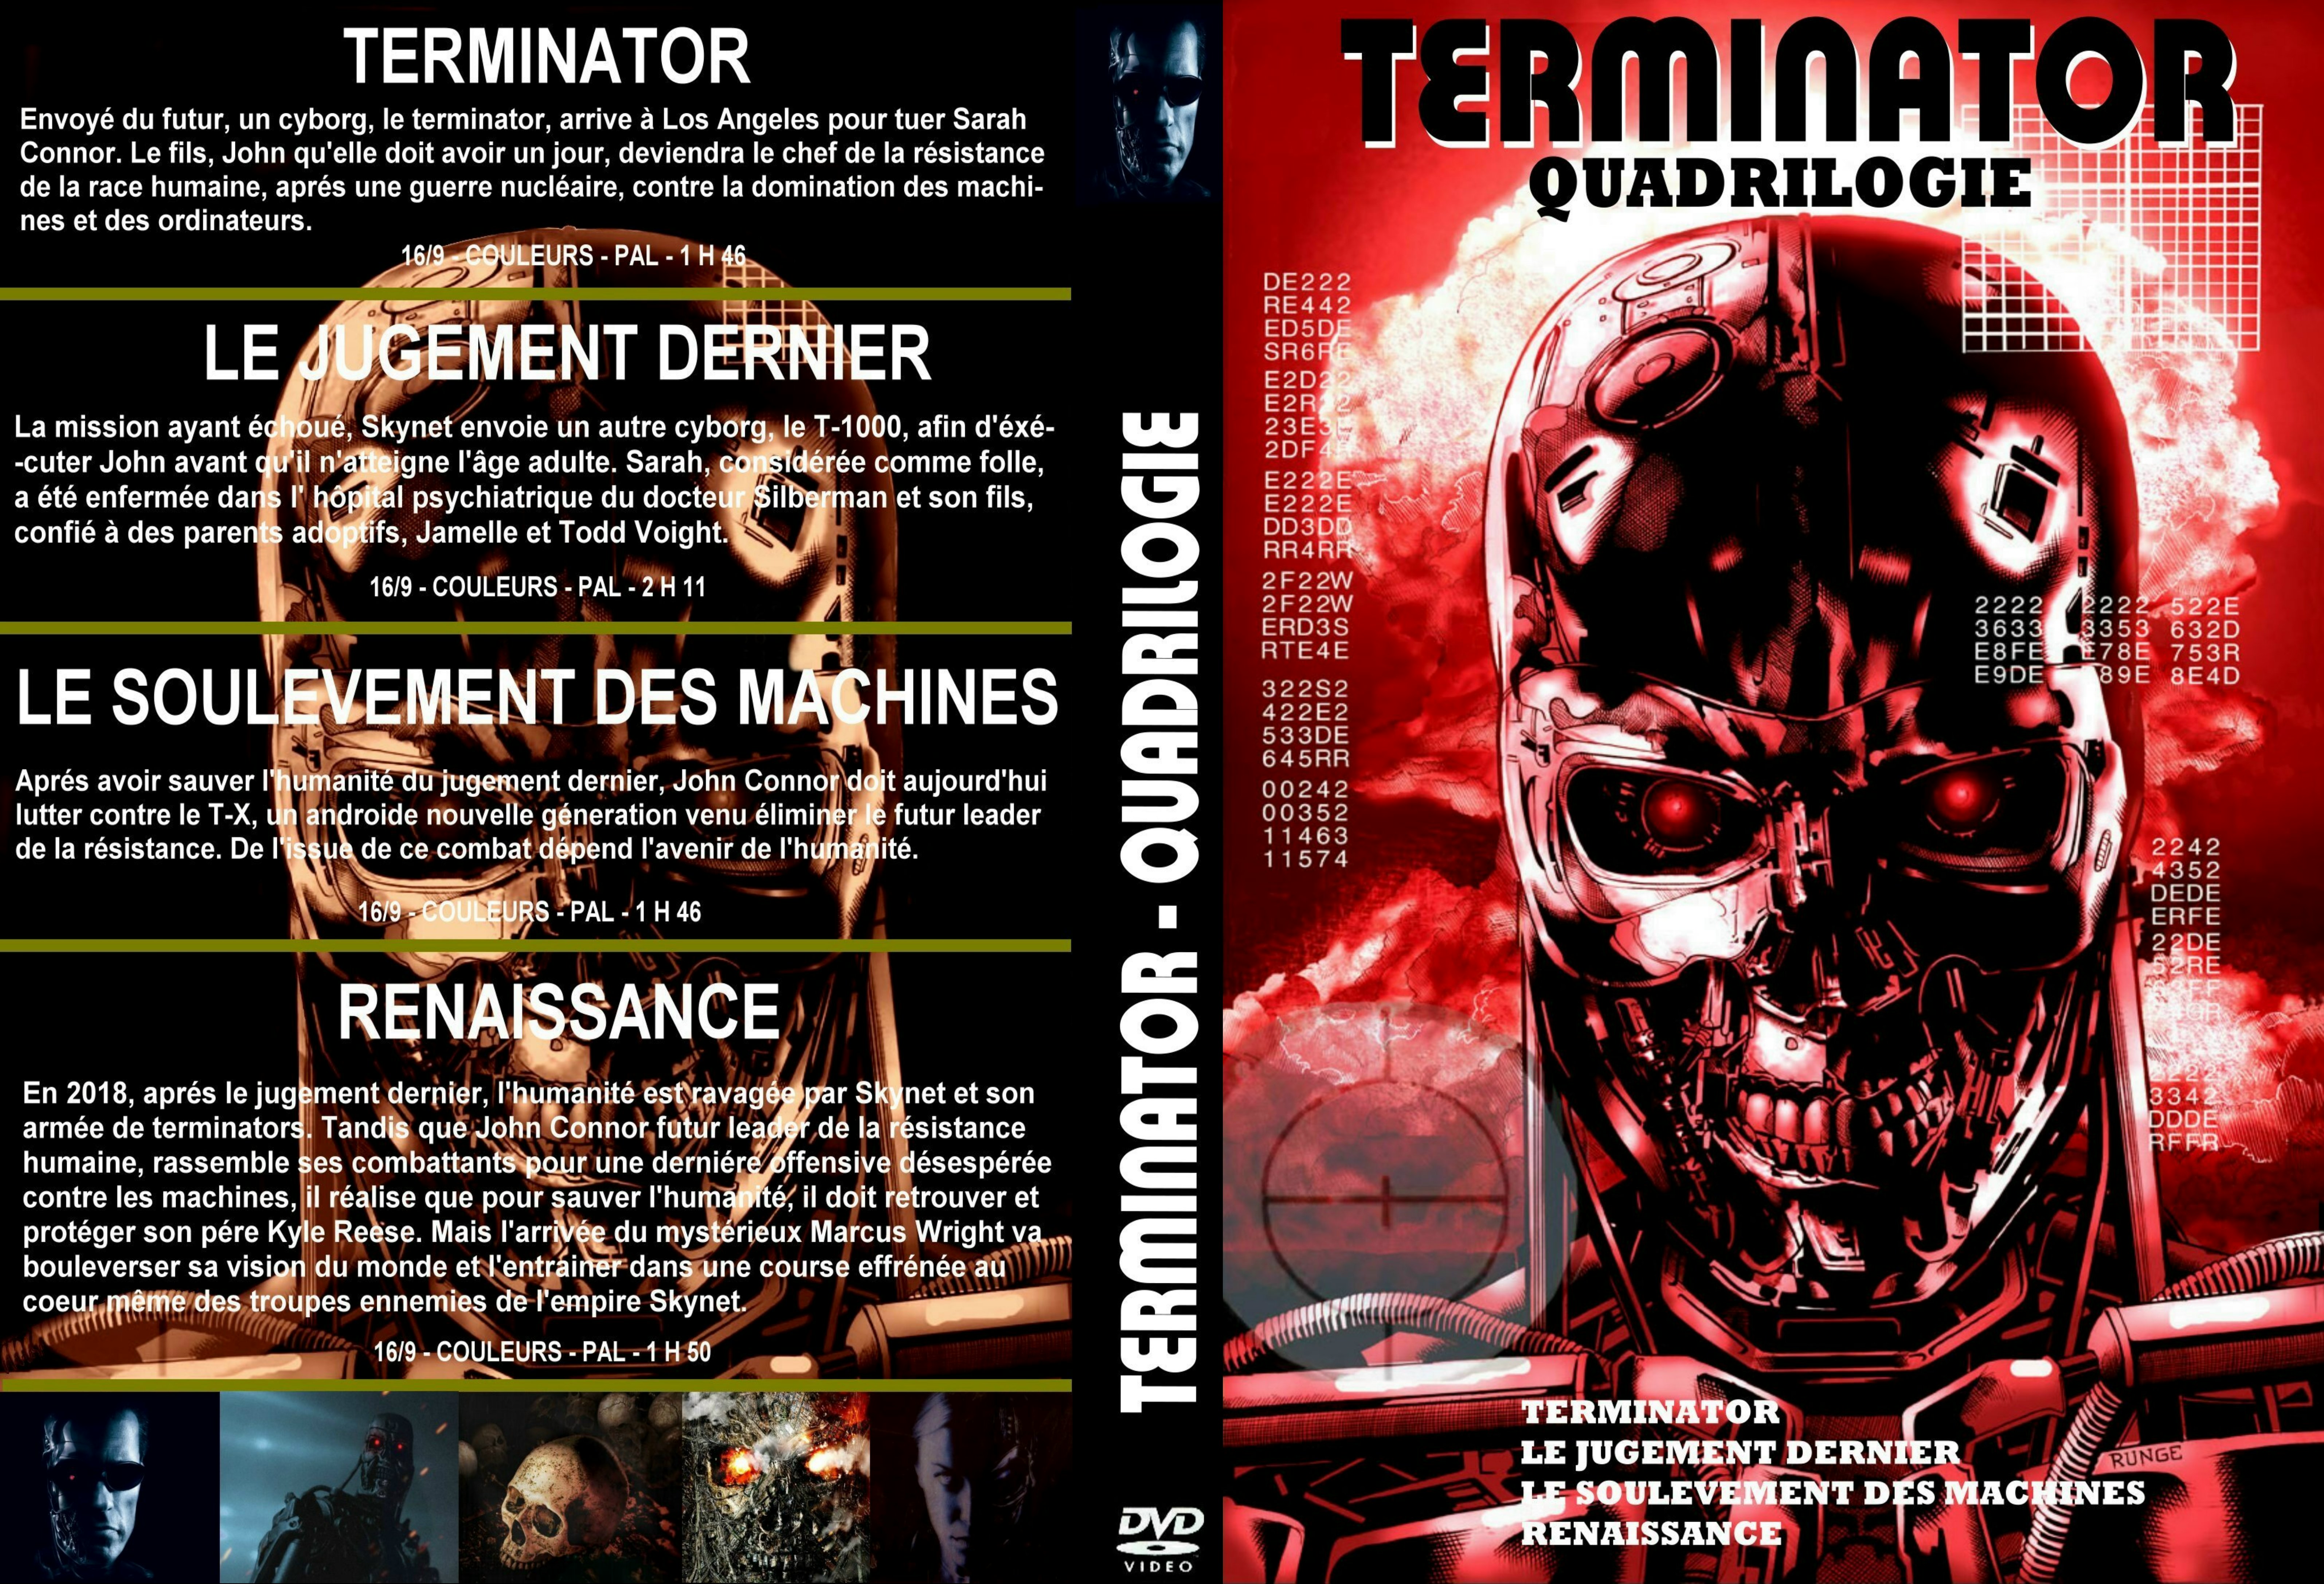 Jaquette DVD Terminator Quadrilogie custom